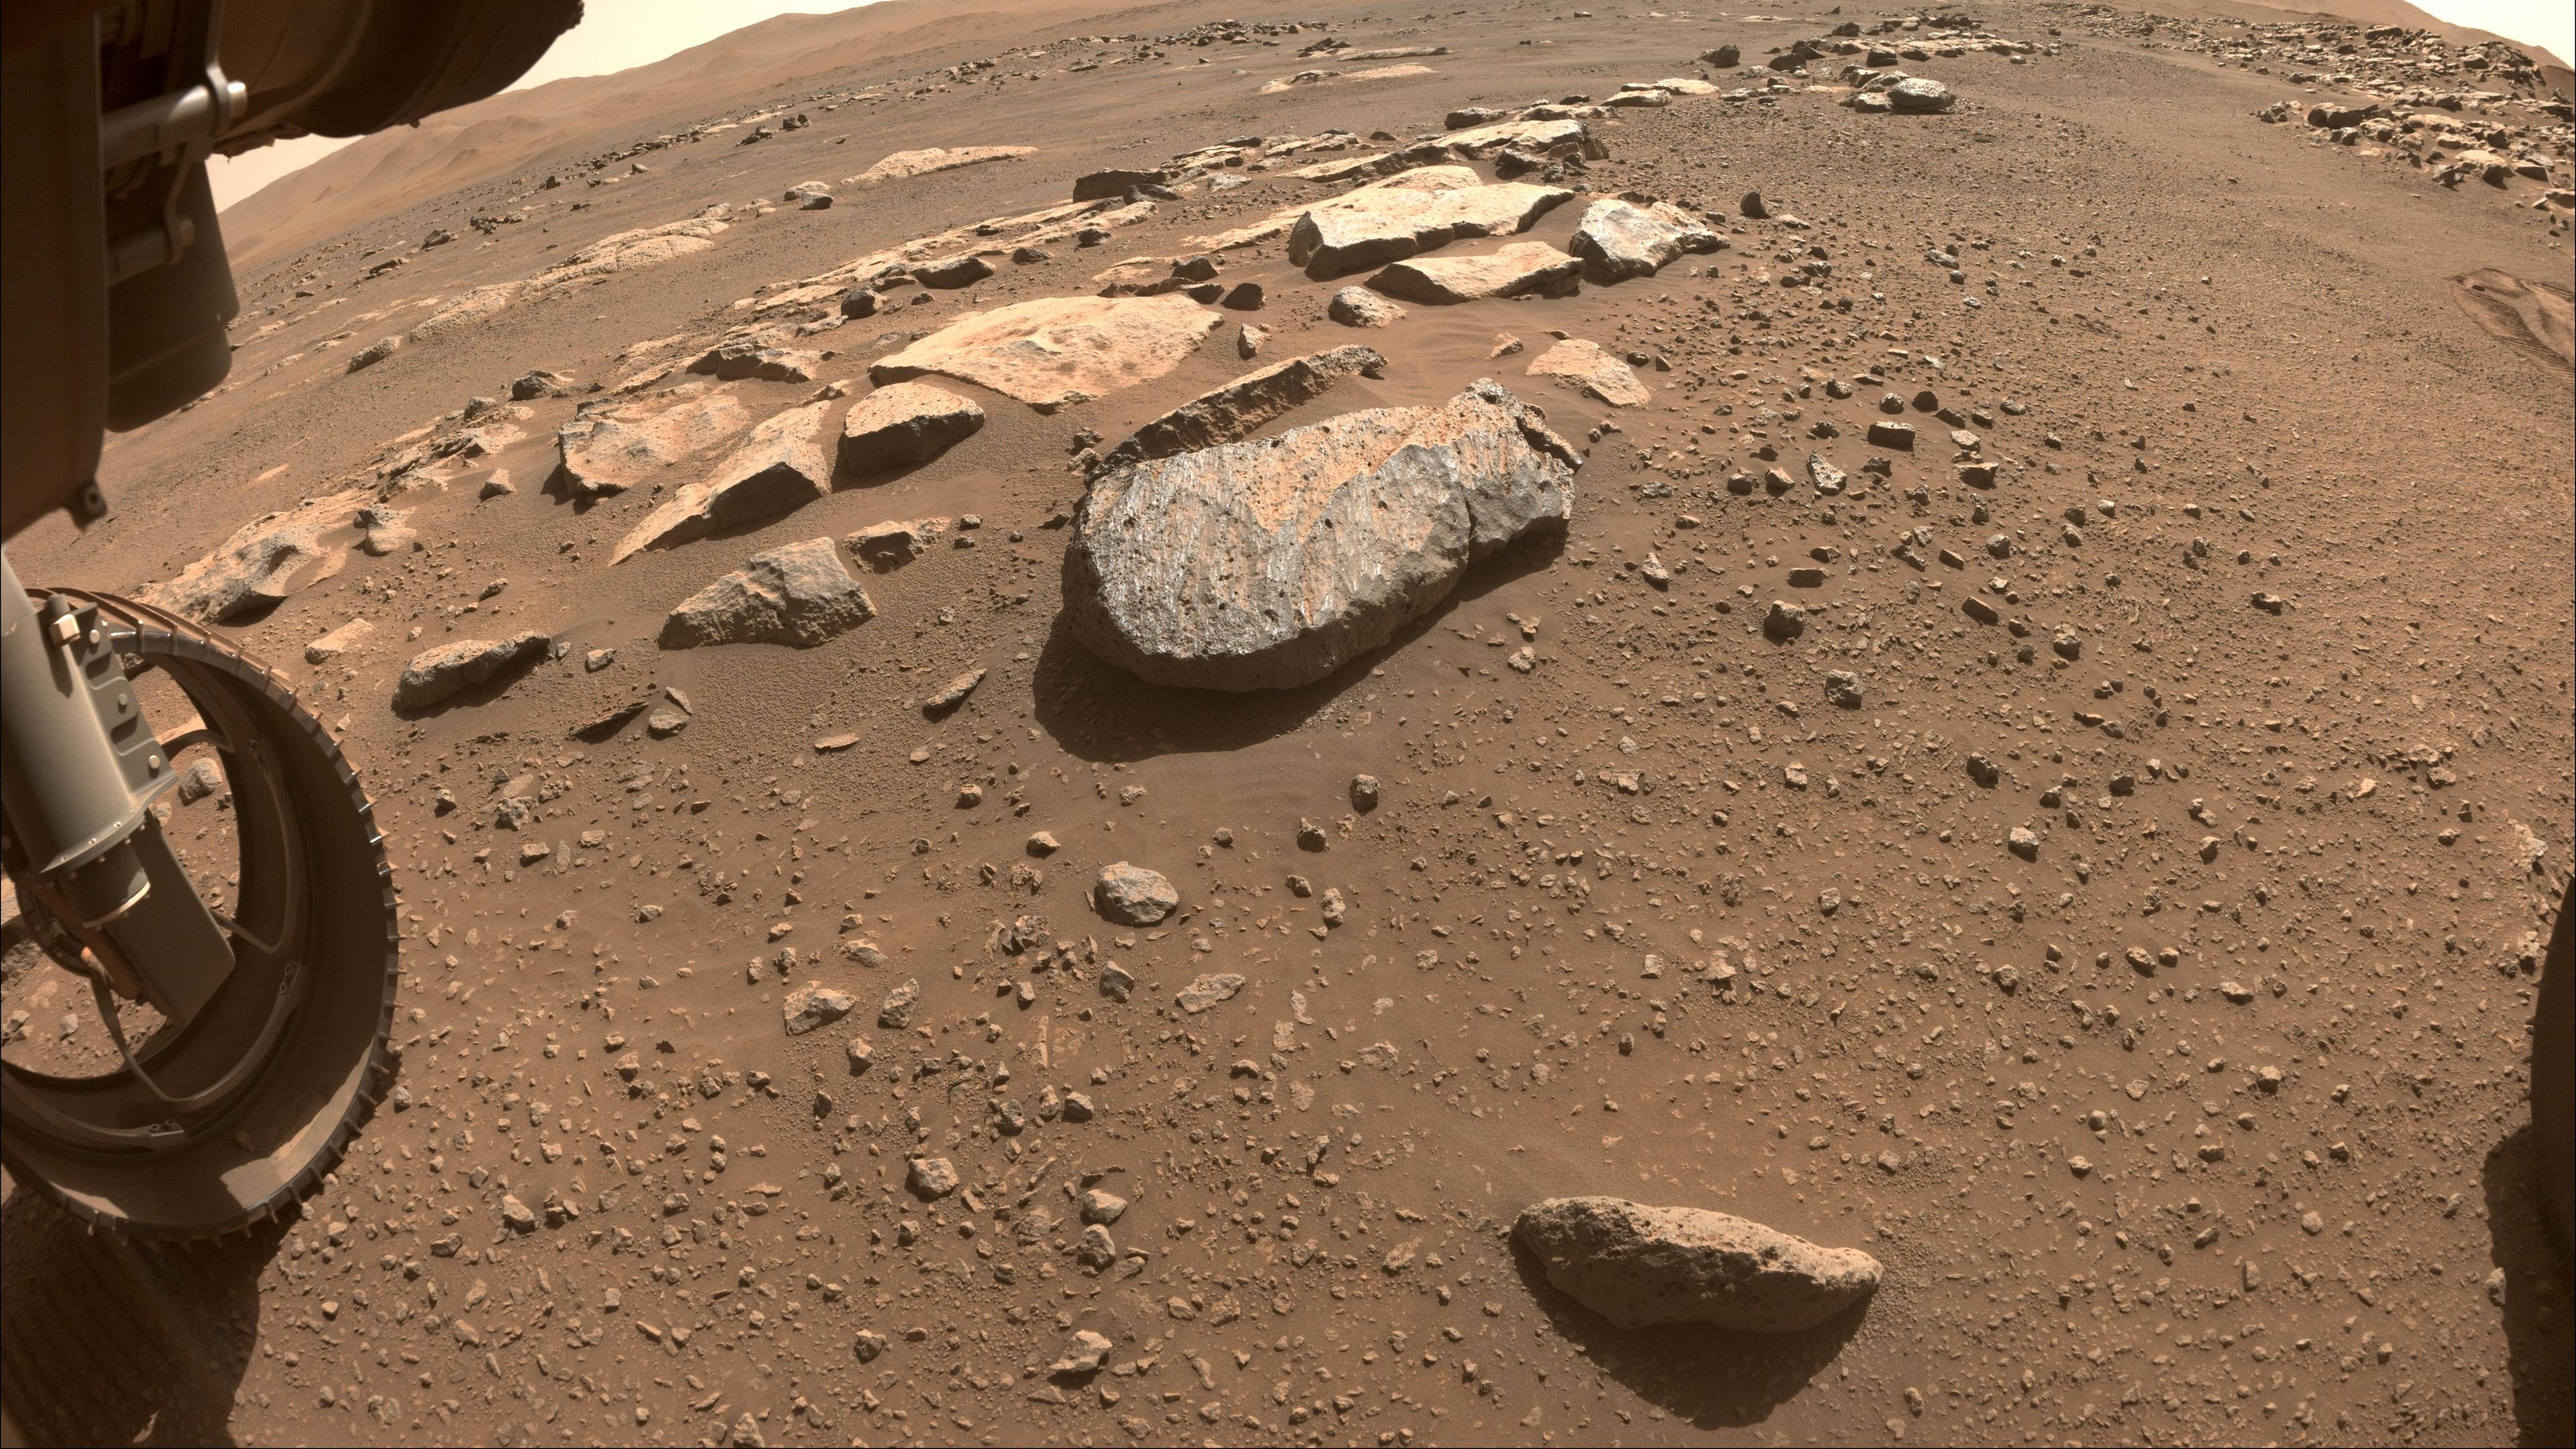 صورة لسطح المرّيخ المكتسي بالأتربة والأحجار وهناك صخرة كبيرة بارزة في وسط الصورة التي تظهر على يسارها عجلة مركبة المثابرة.